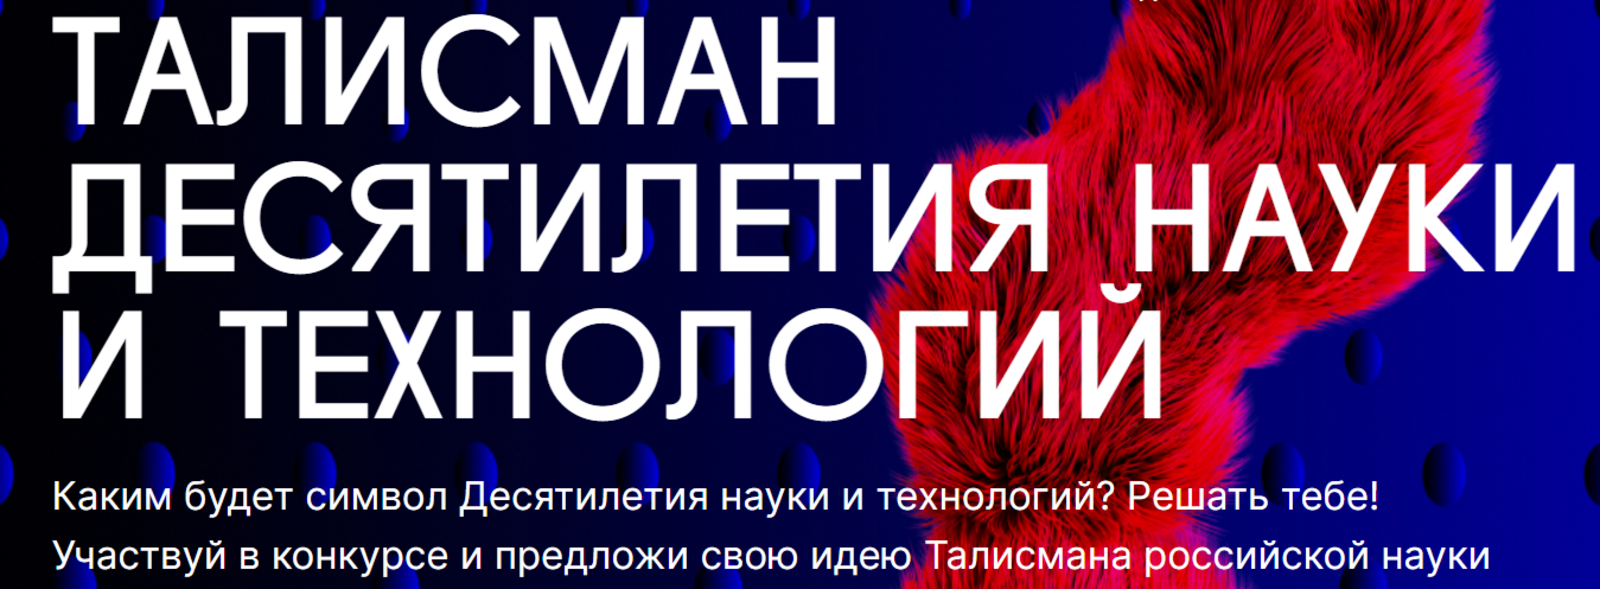 Около 1,5 тысяч заявок поступило со всей России на конкурс «Талисман Десятилетия науки и технологий»